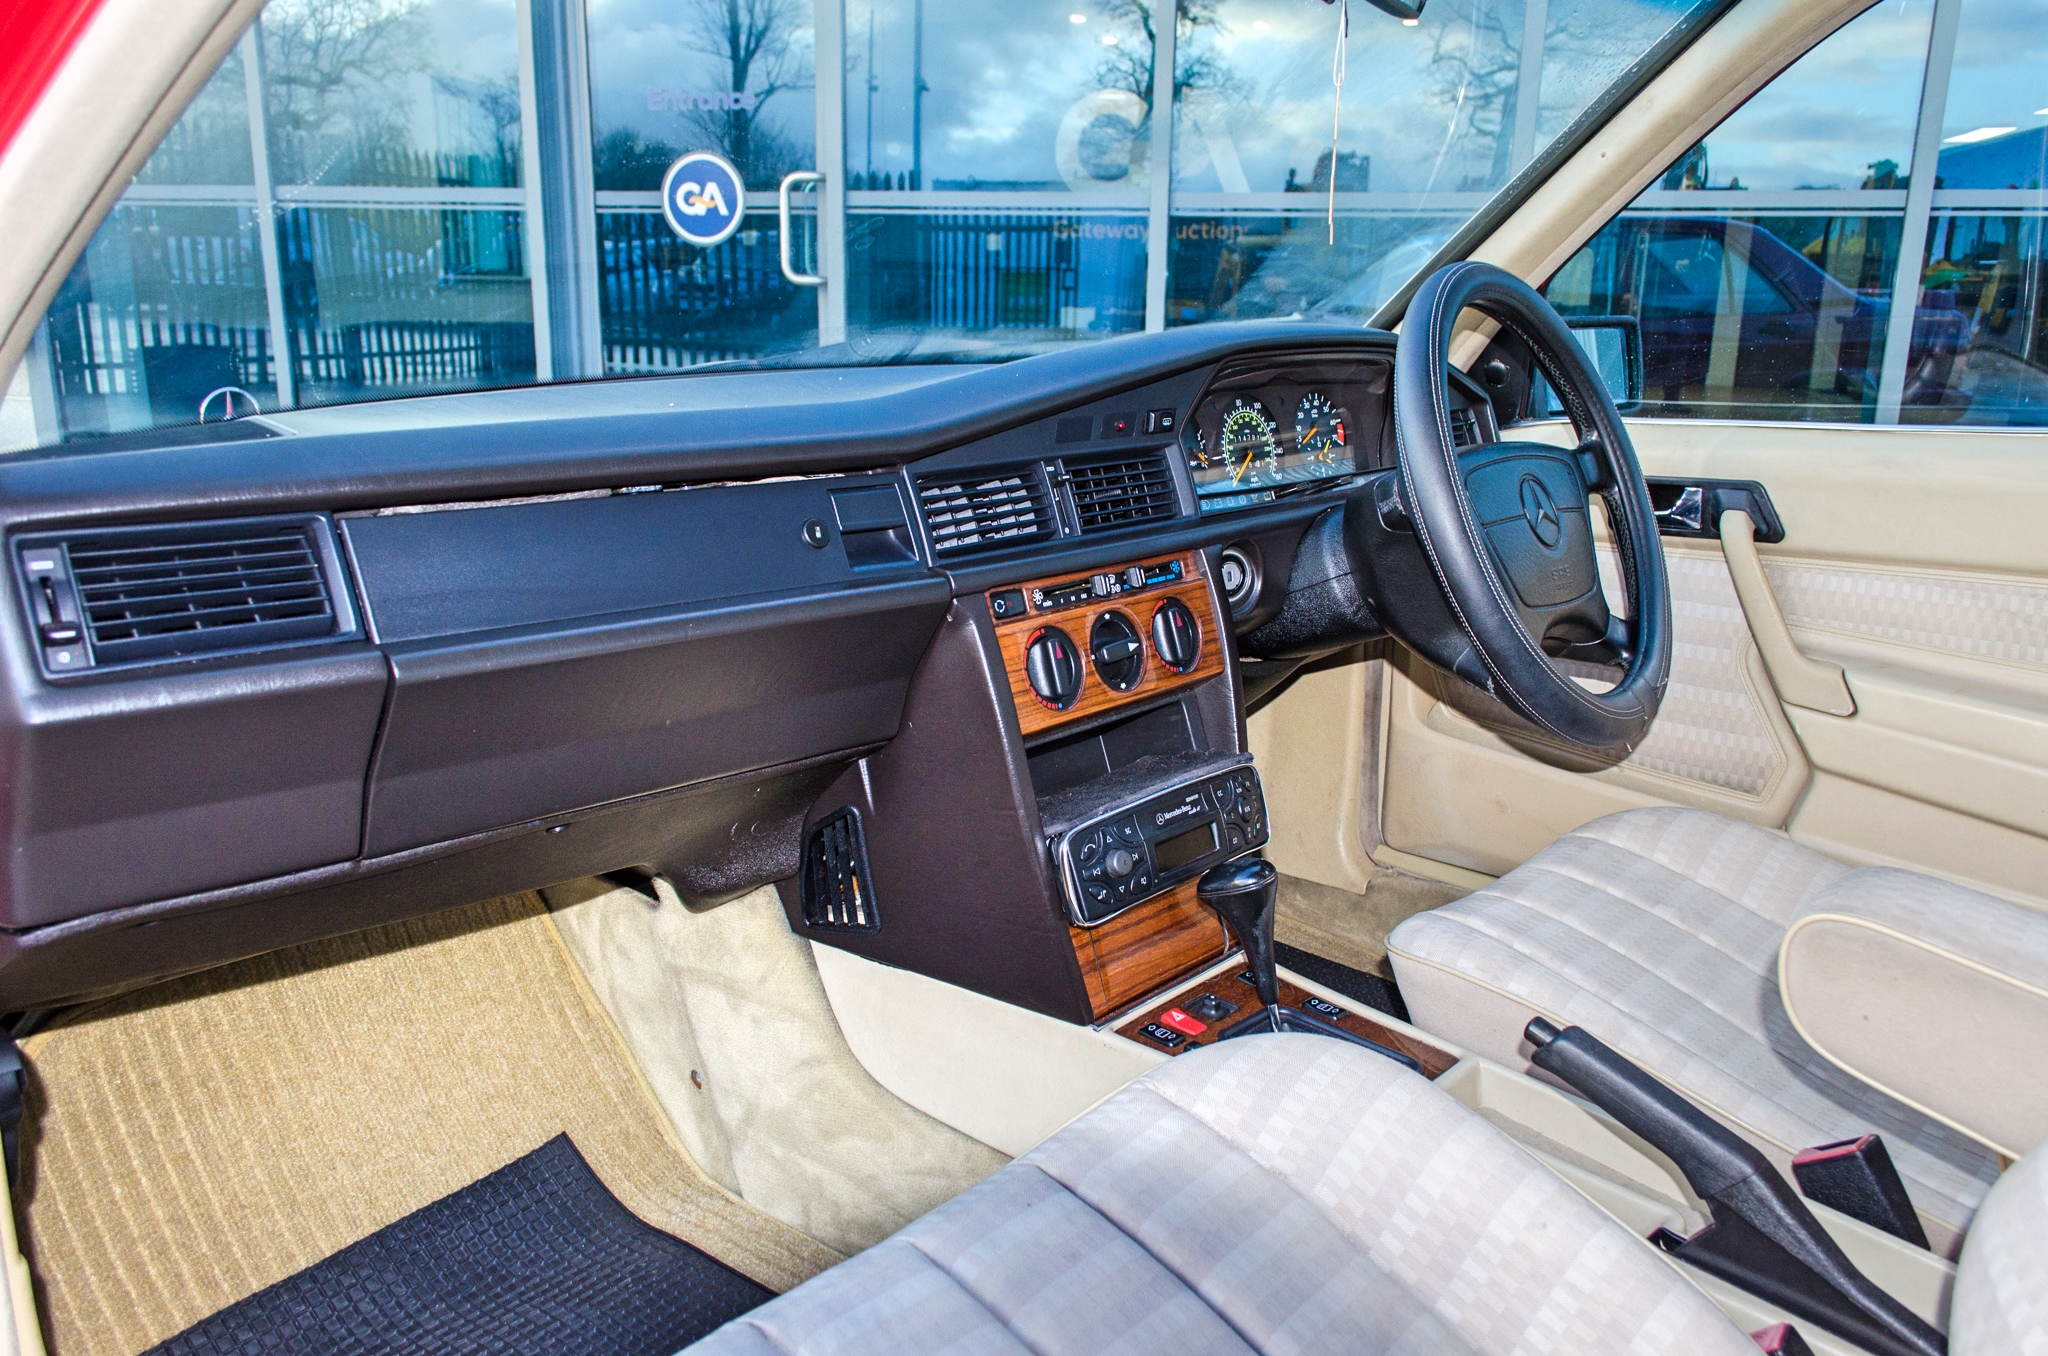 1993 Mercedes-Benz 190E 2.6 Litre 4 door salon - Image 35 of 52